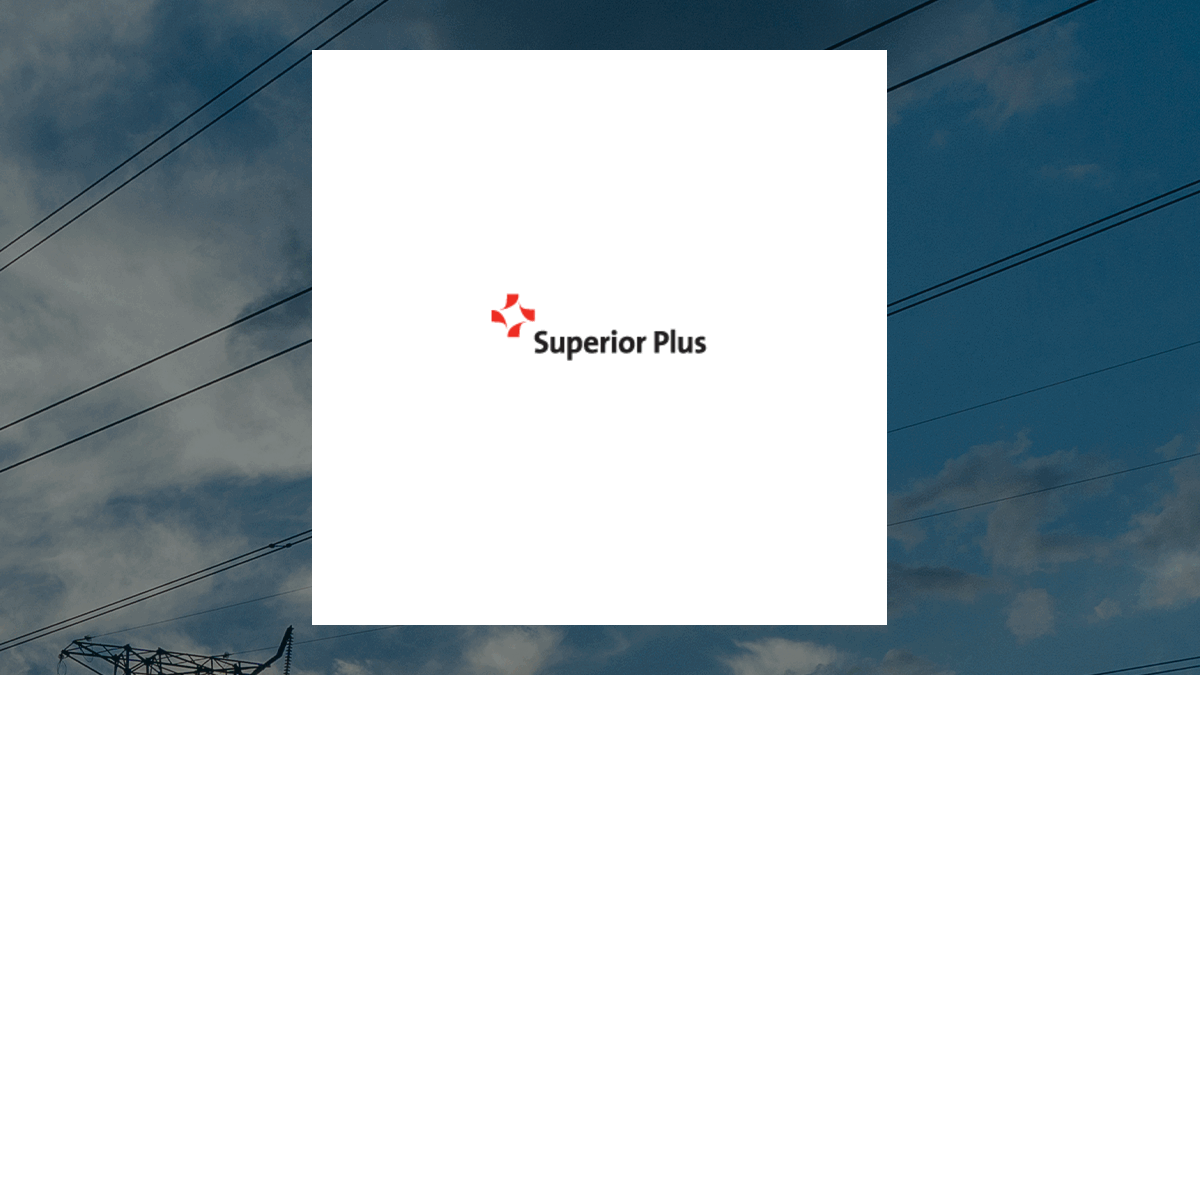 Superior Plus logo